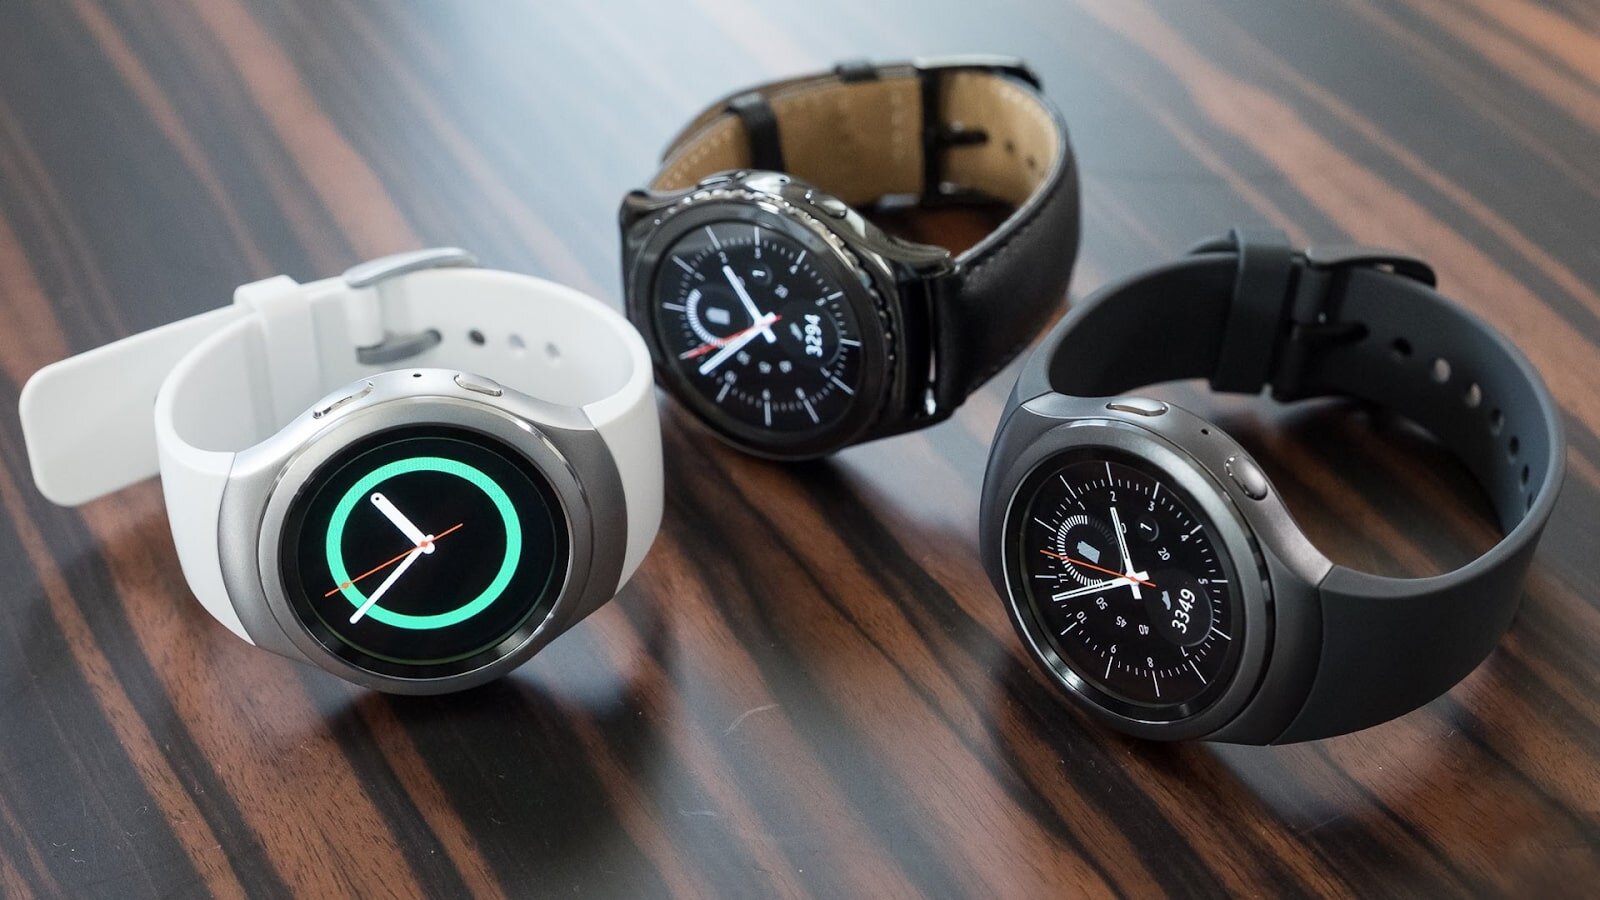 Đồng hồ thông minh của Samsung Gear S2 giá chỉ còn 498 nghìn đồng